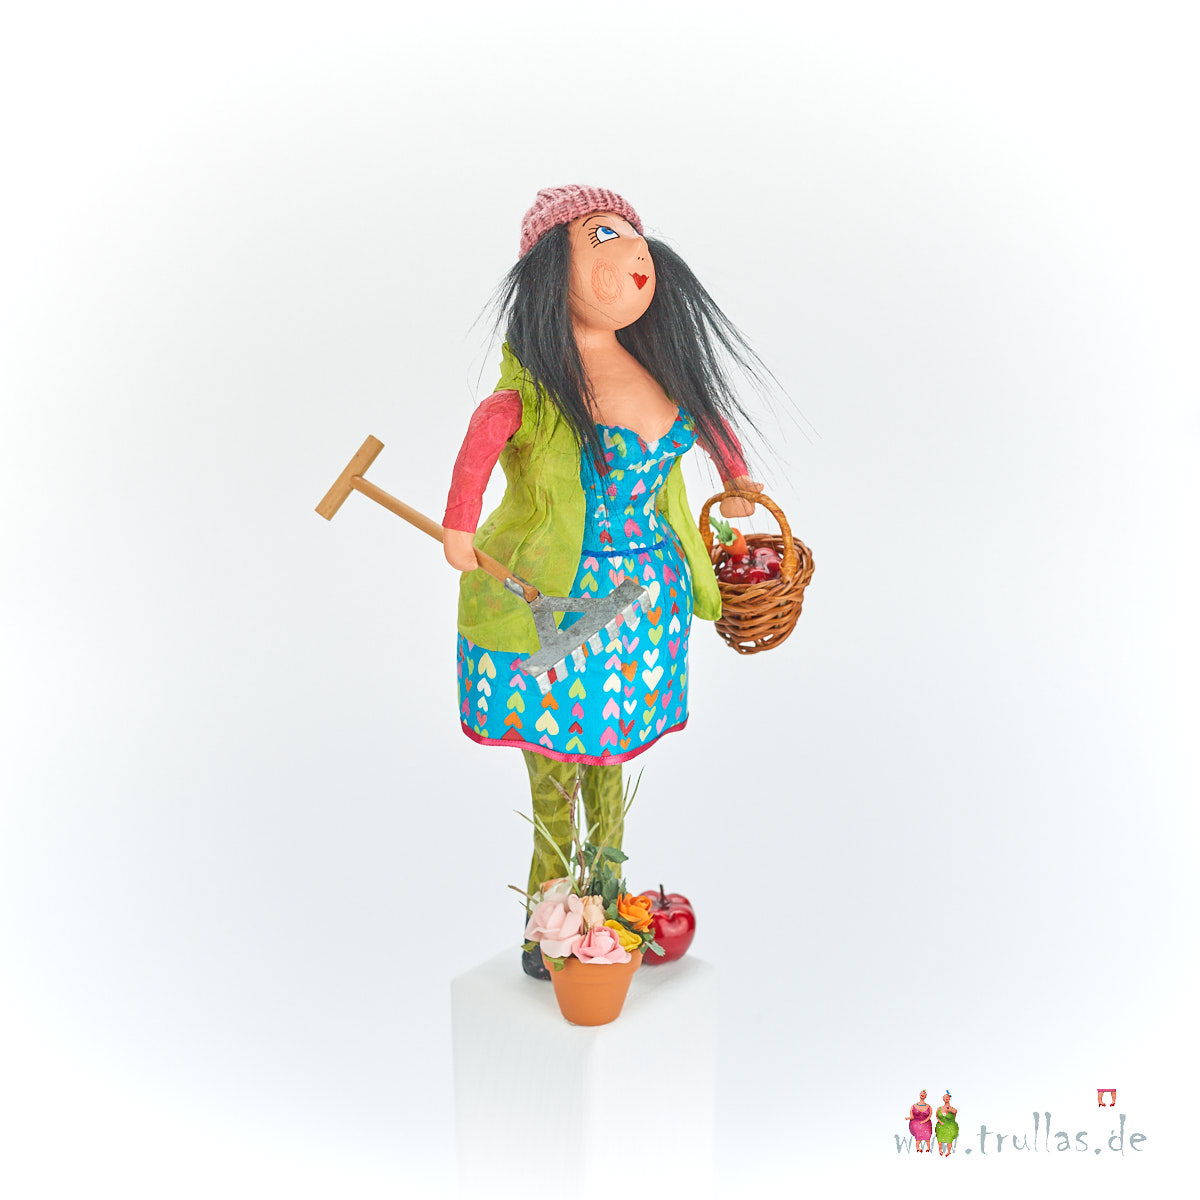 Gärtnerin-Trulla - Klara ist eine handgefertigte Figur aus Pappmachee. Trullas sind Geschenkideen fur Menschen die handgemachte Kunst schätzen.